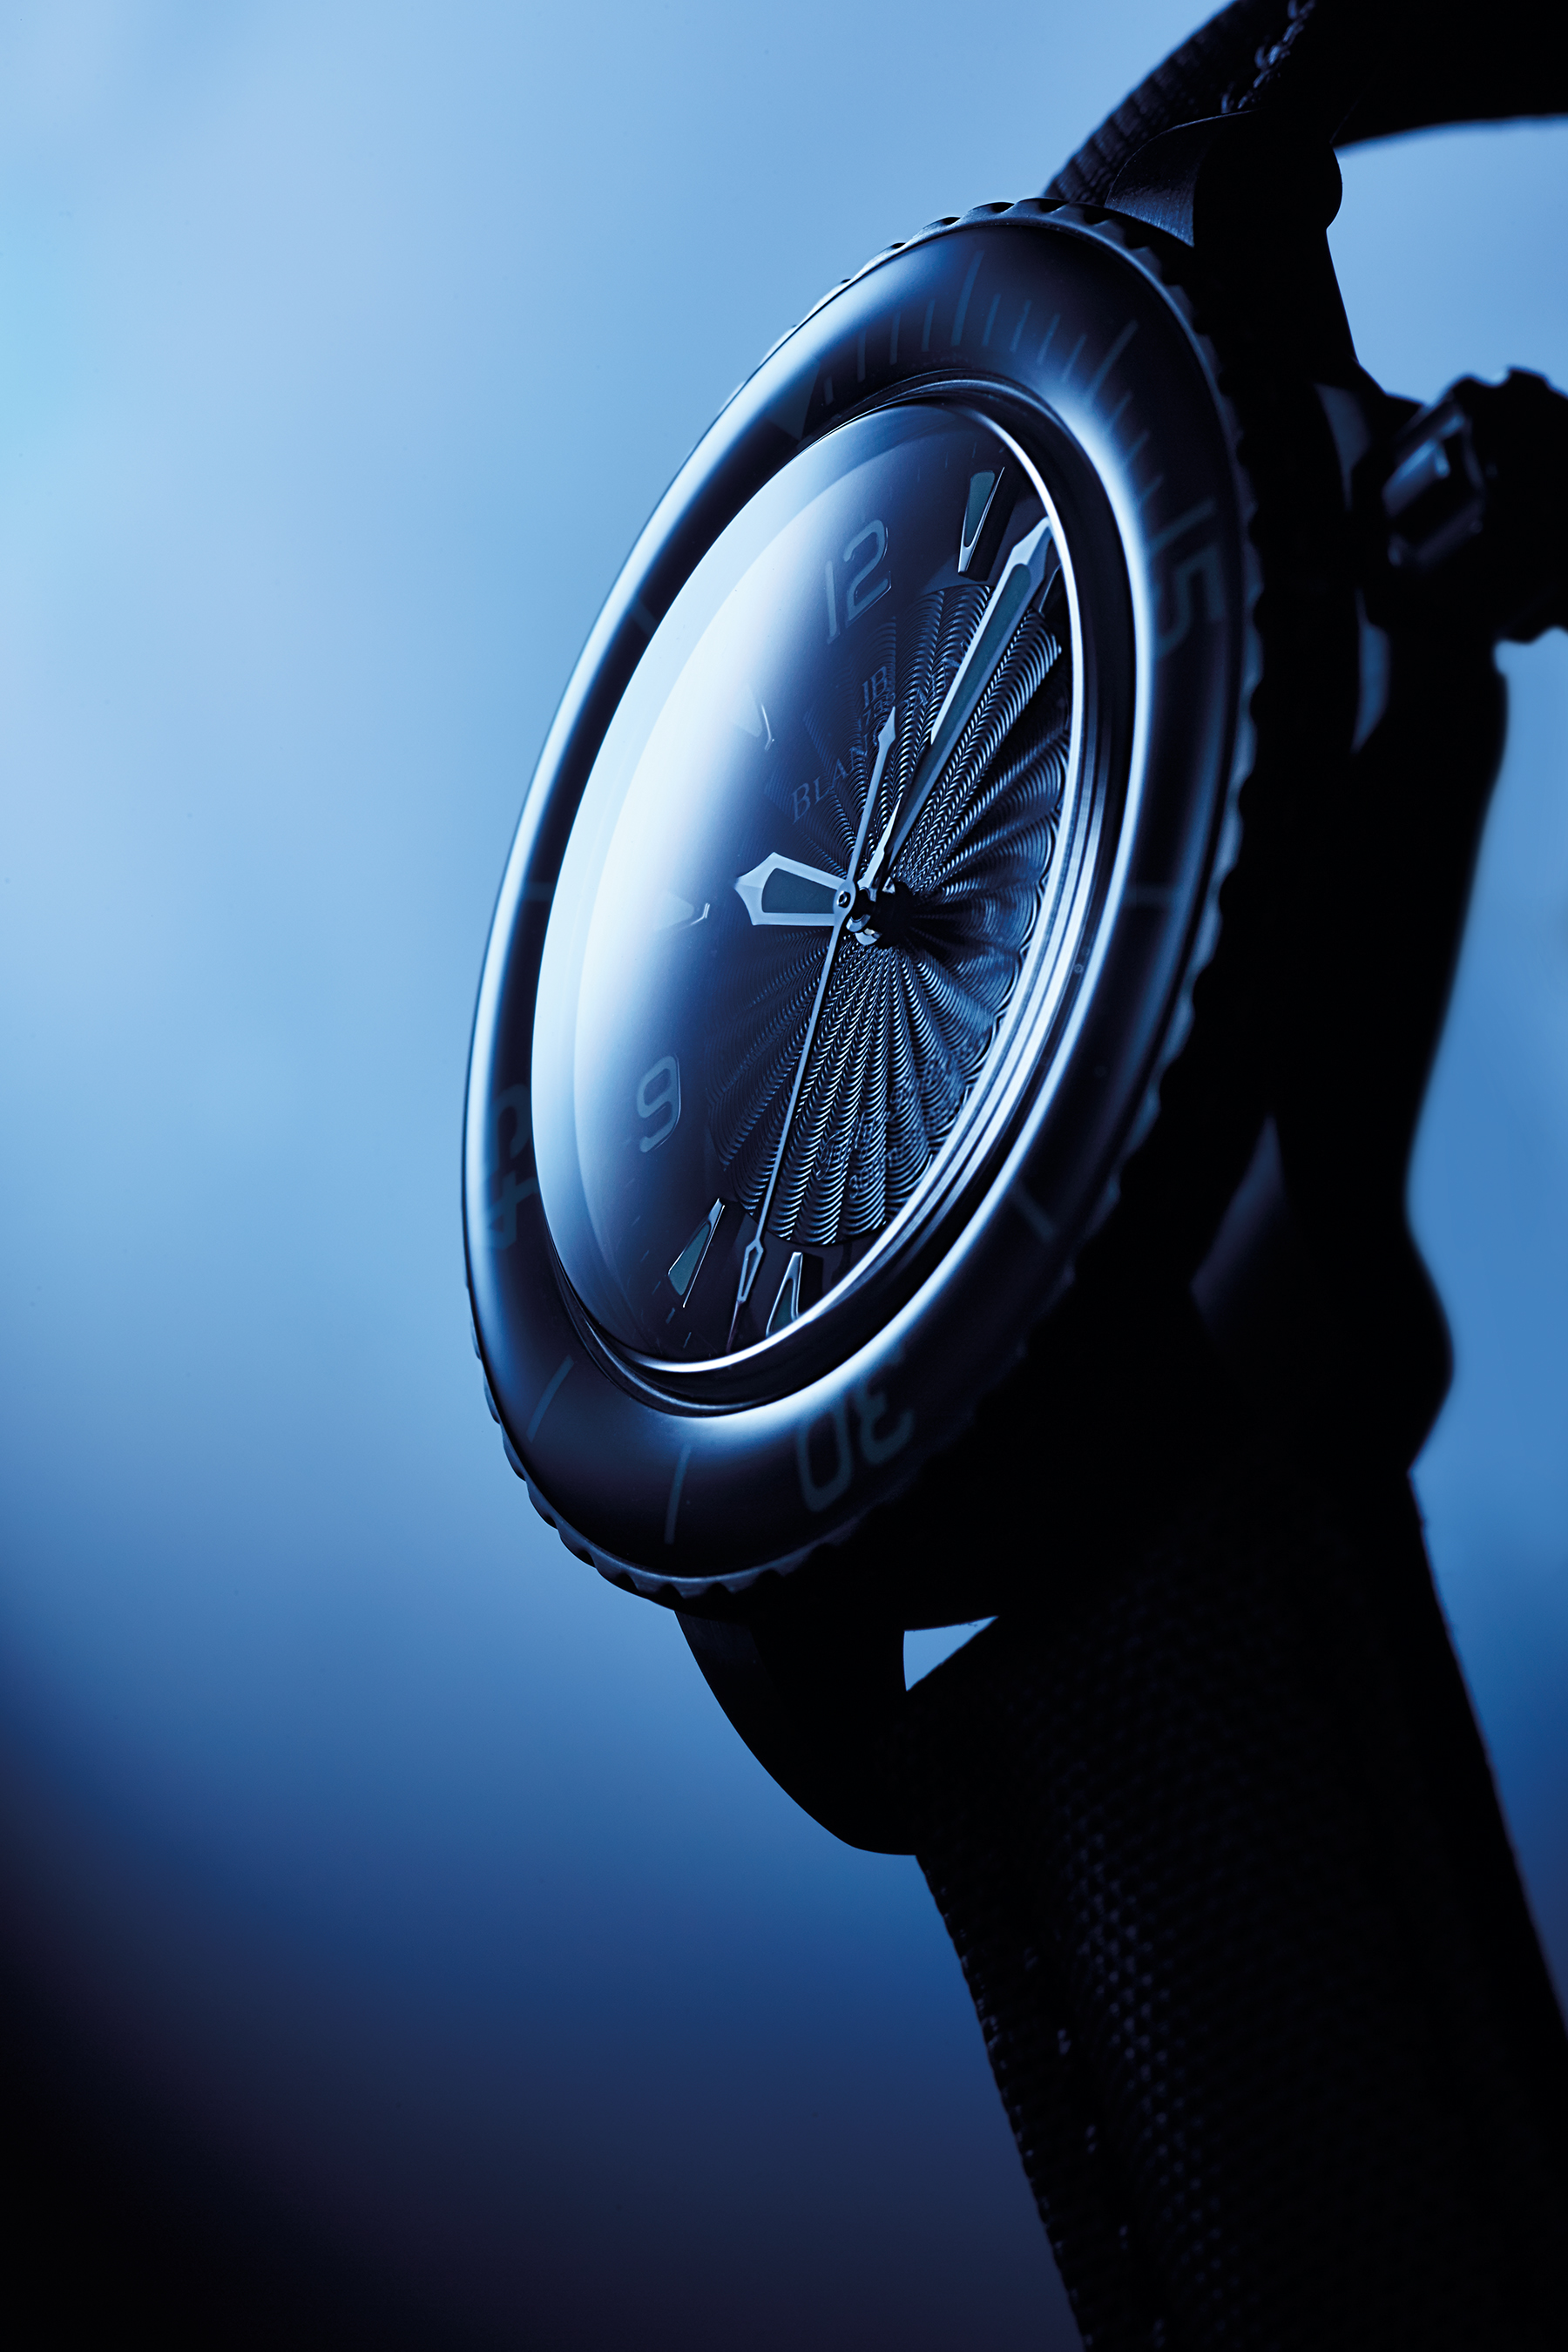 MINGWATCH | Watches on Behance